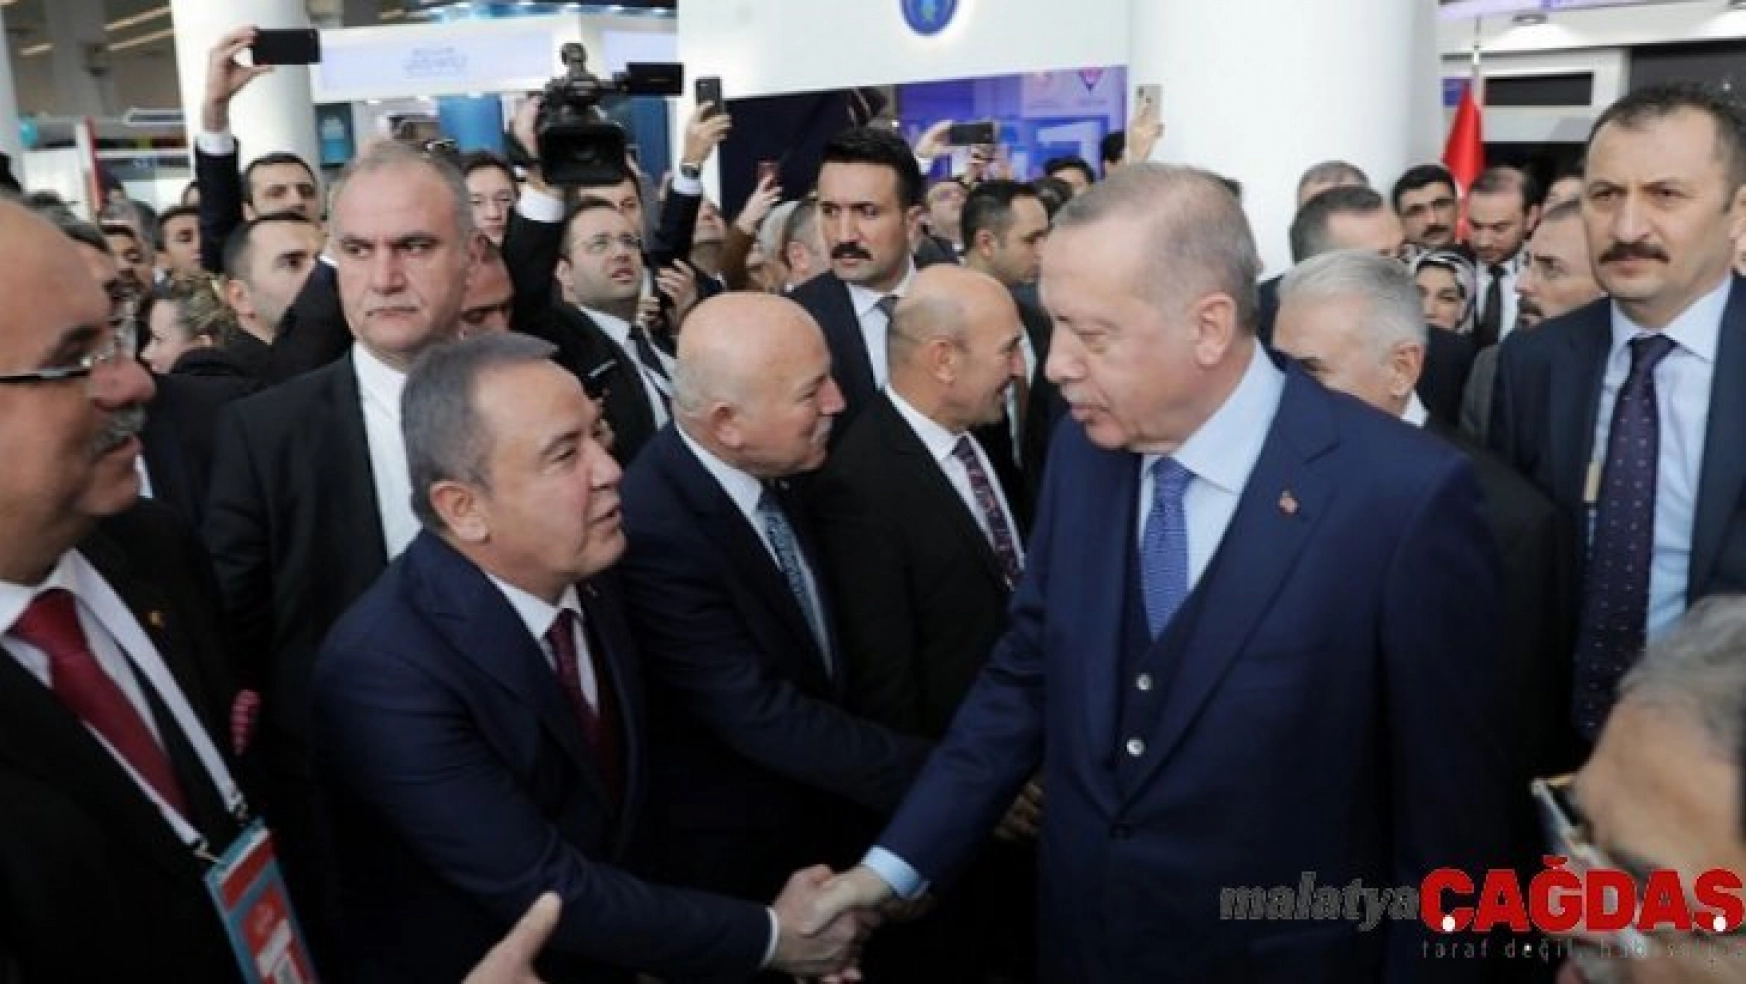 Başkan Böcek'in Ankara temasları